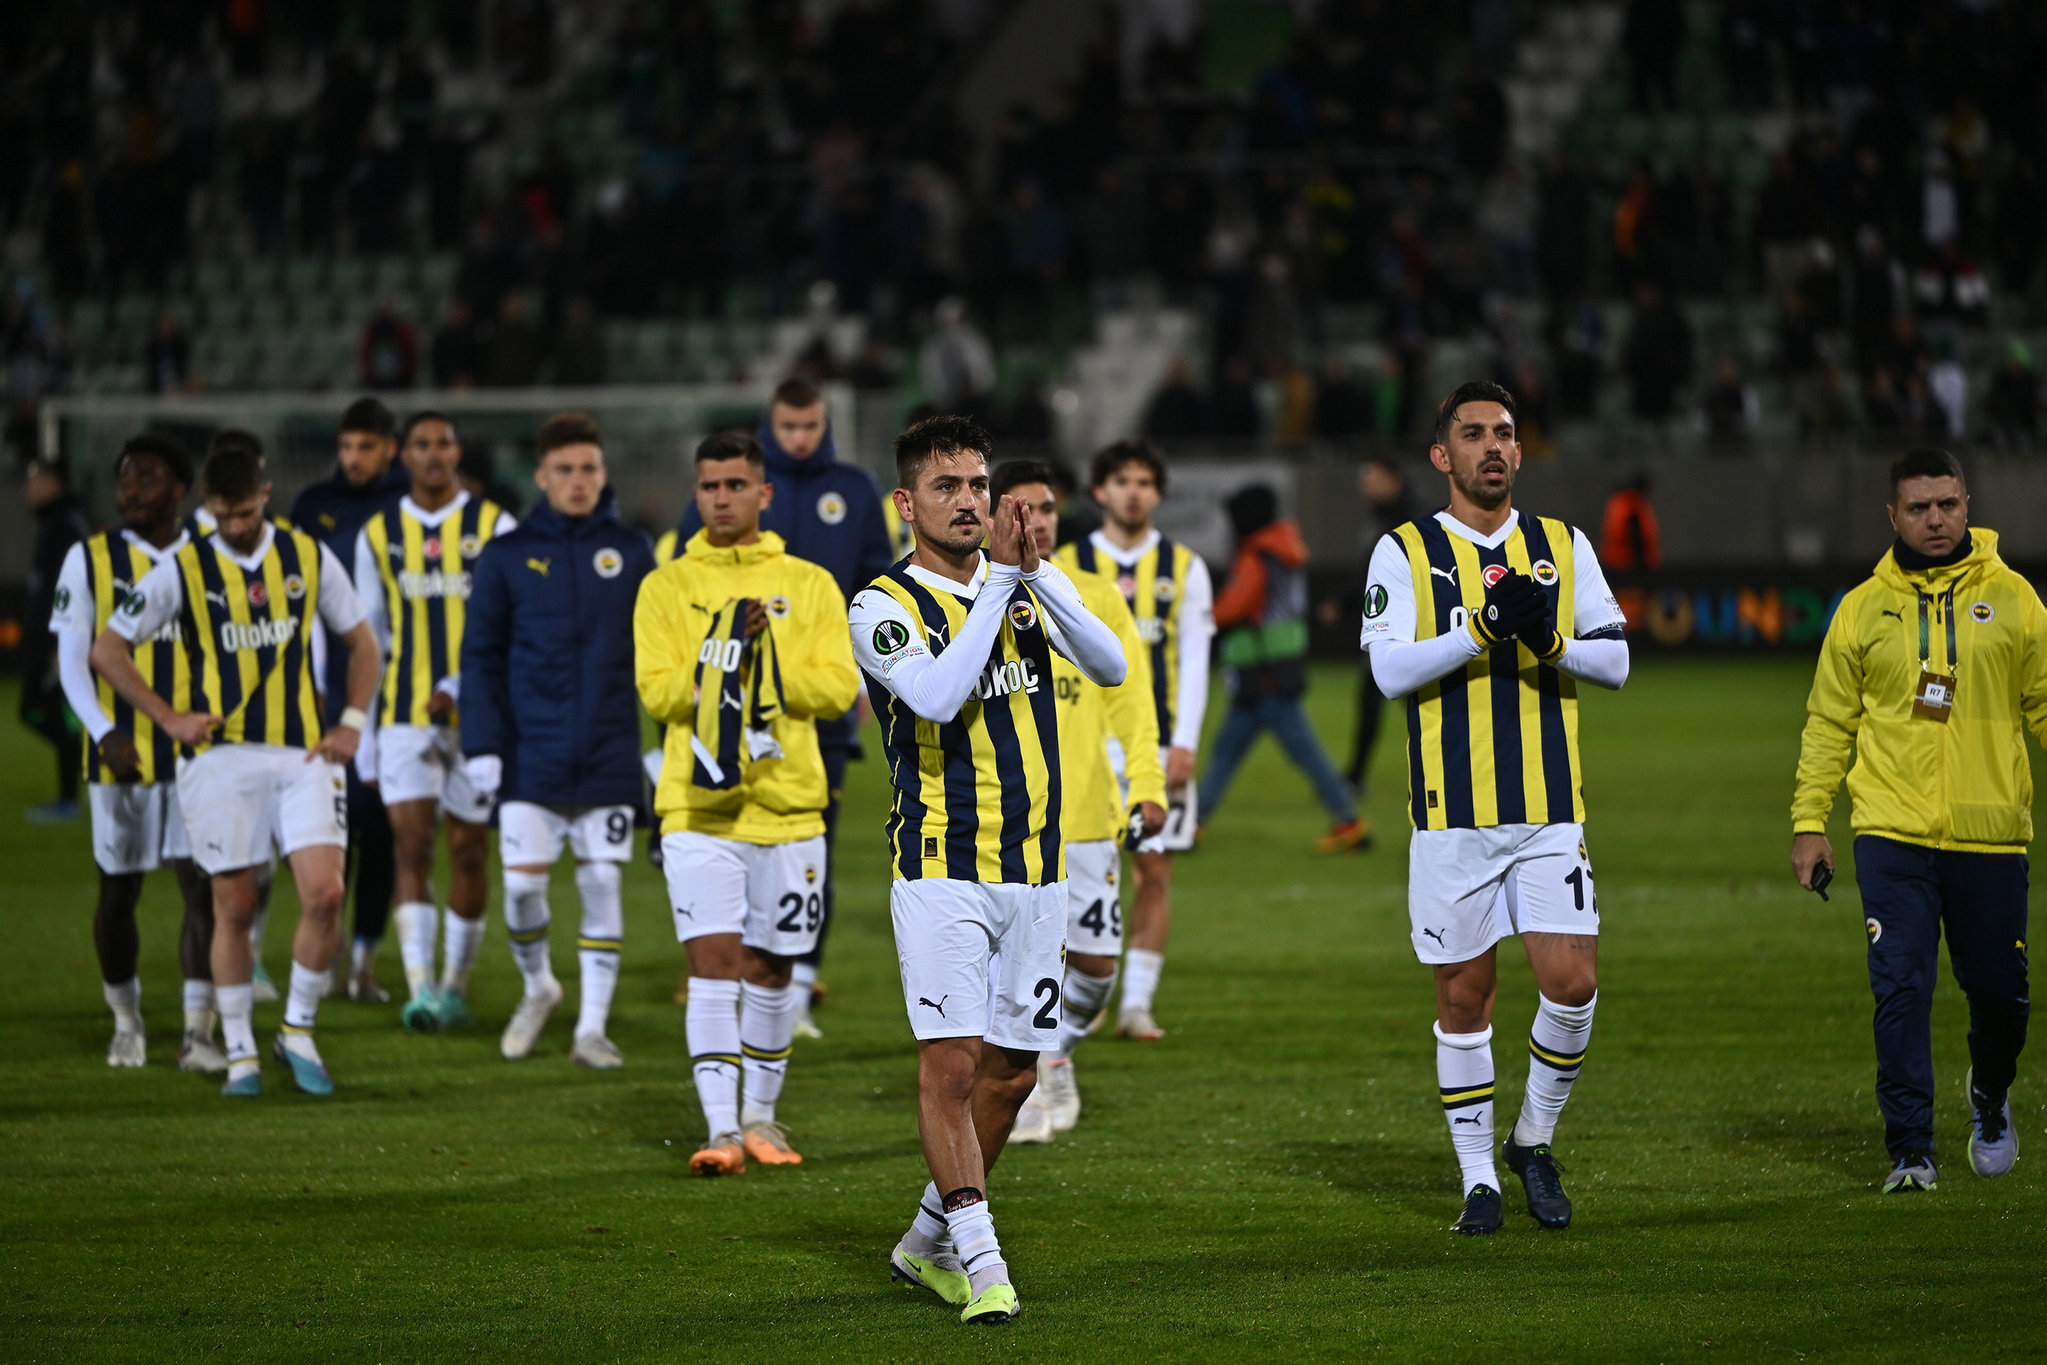 Fenerbahçe Konferans Ligi’nde gruptan nasıl çıkar? İşte bütün ihtimaller...